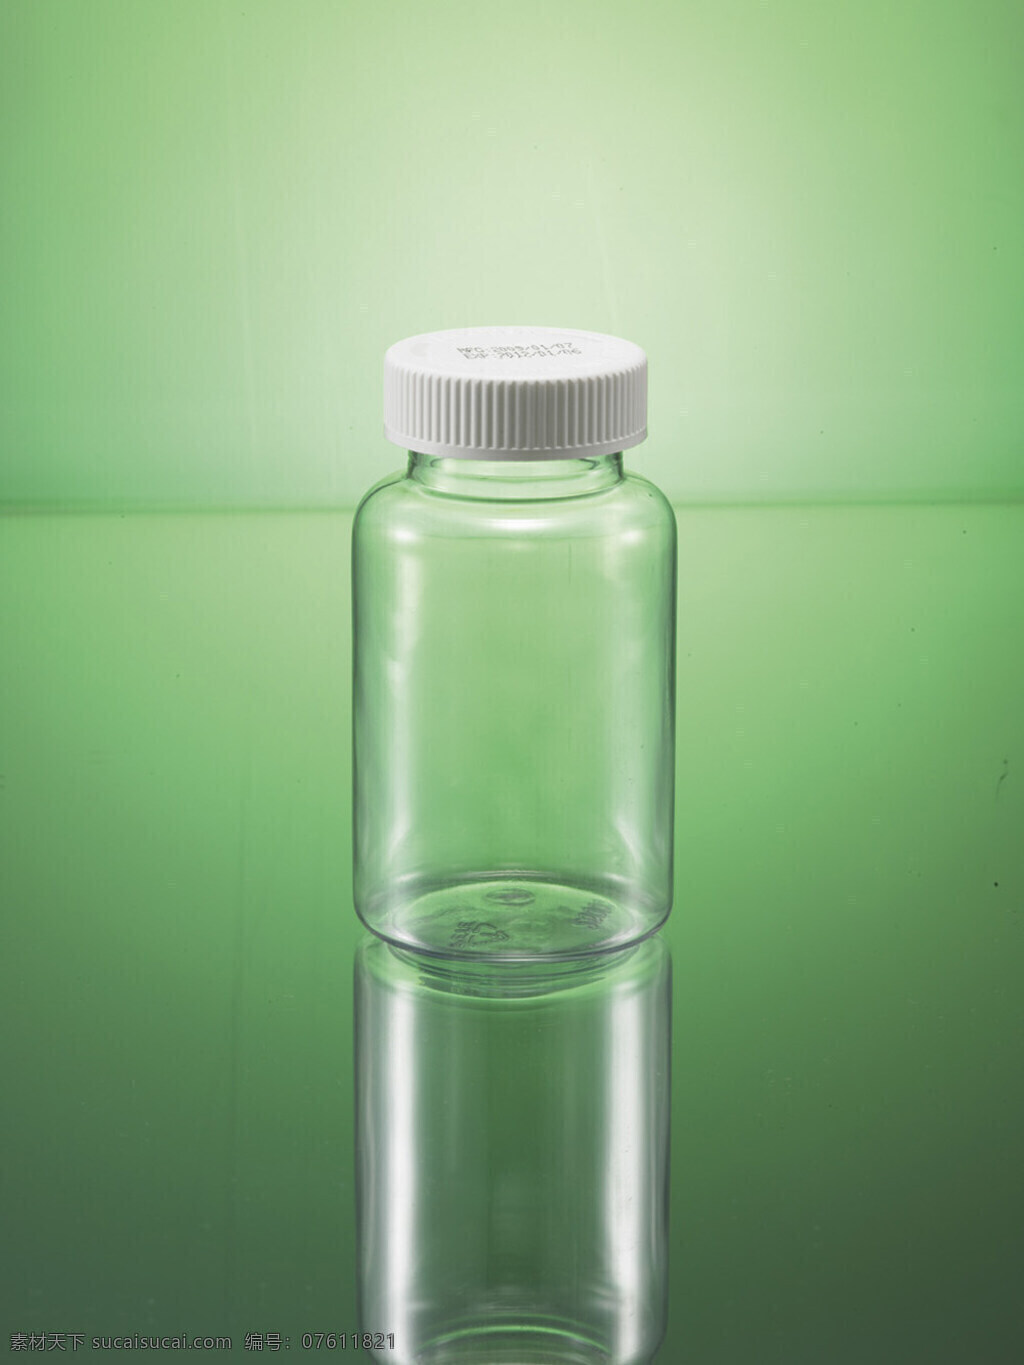 空瓶 pvc 透明 瓶子 玻璃瓶 康 力士 2009 年 产品 生活百科 生活素材